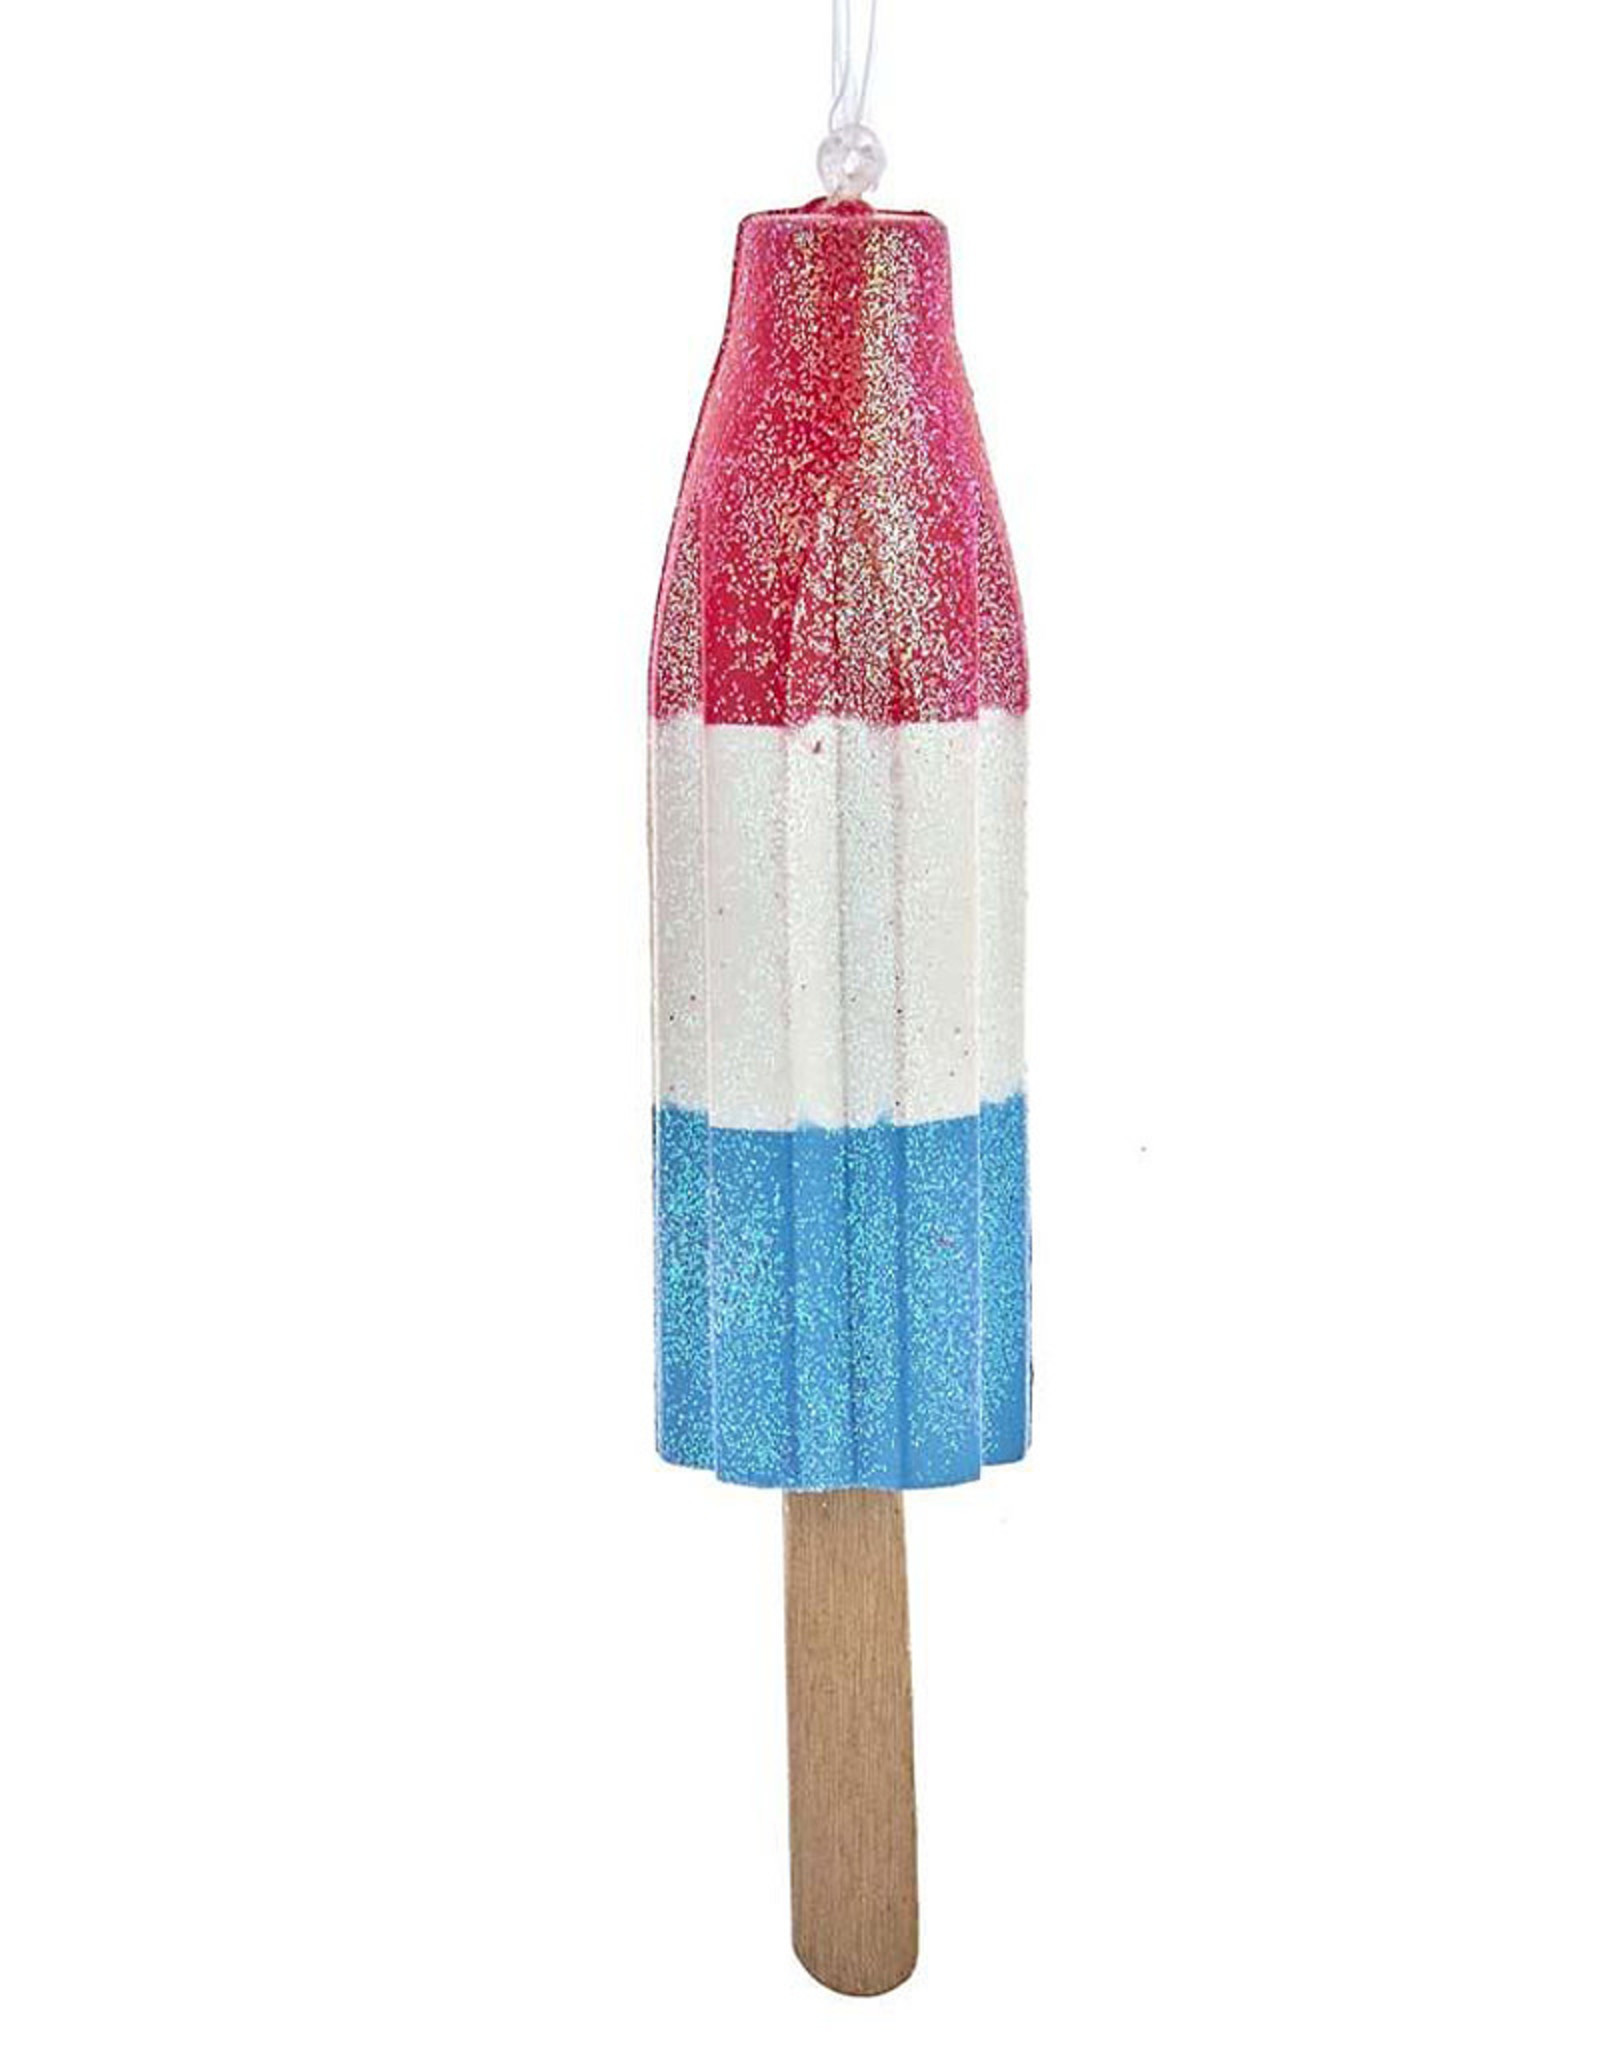 Kurt Adler Ice Rocket Pop Popsicle Ornament - Red White Blue